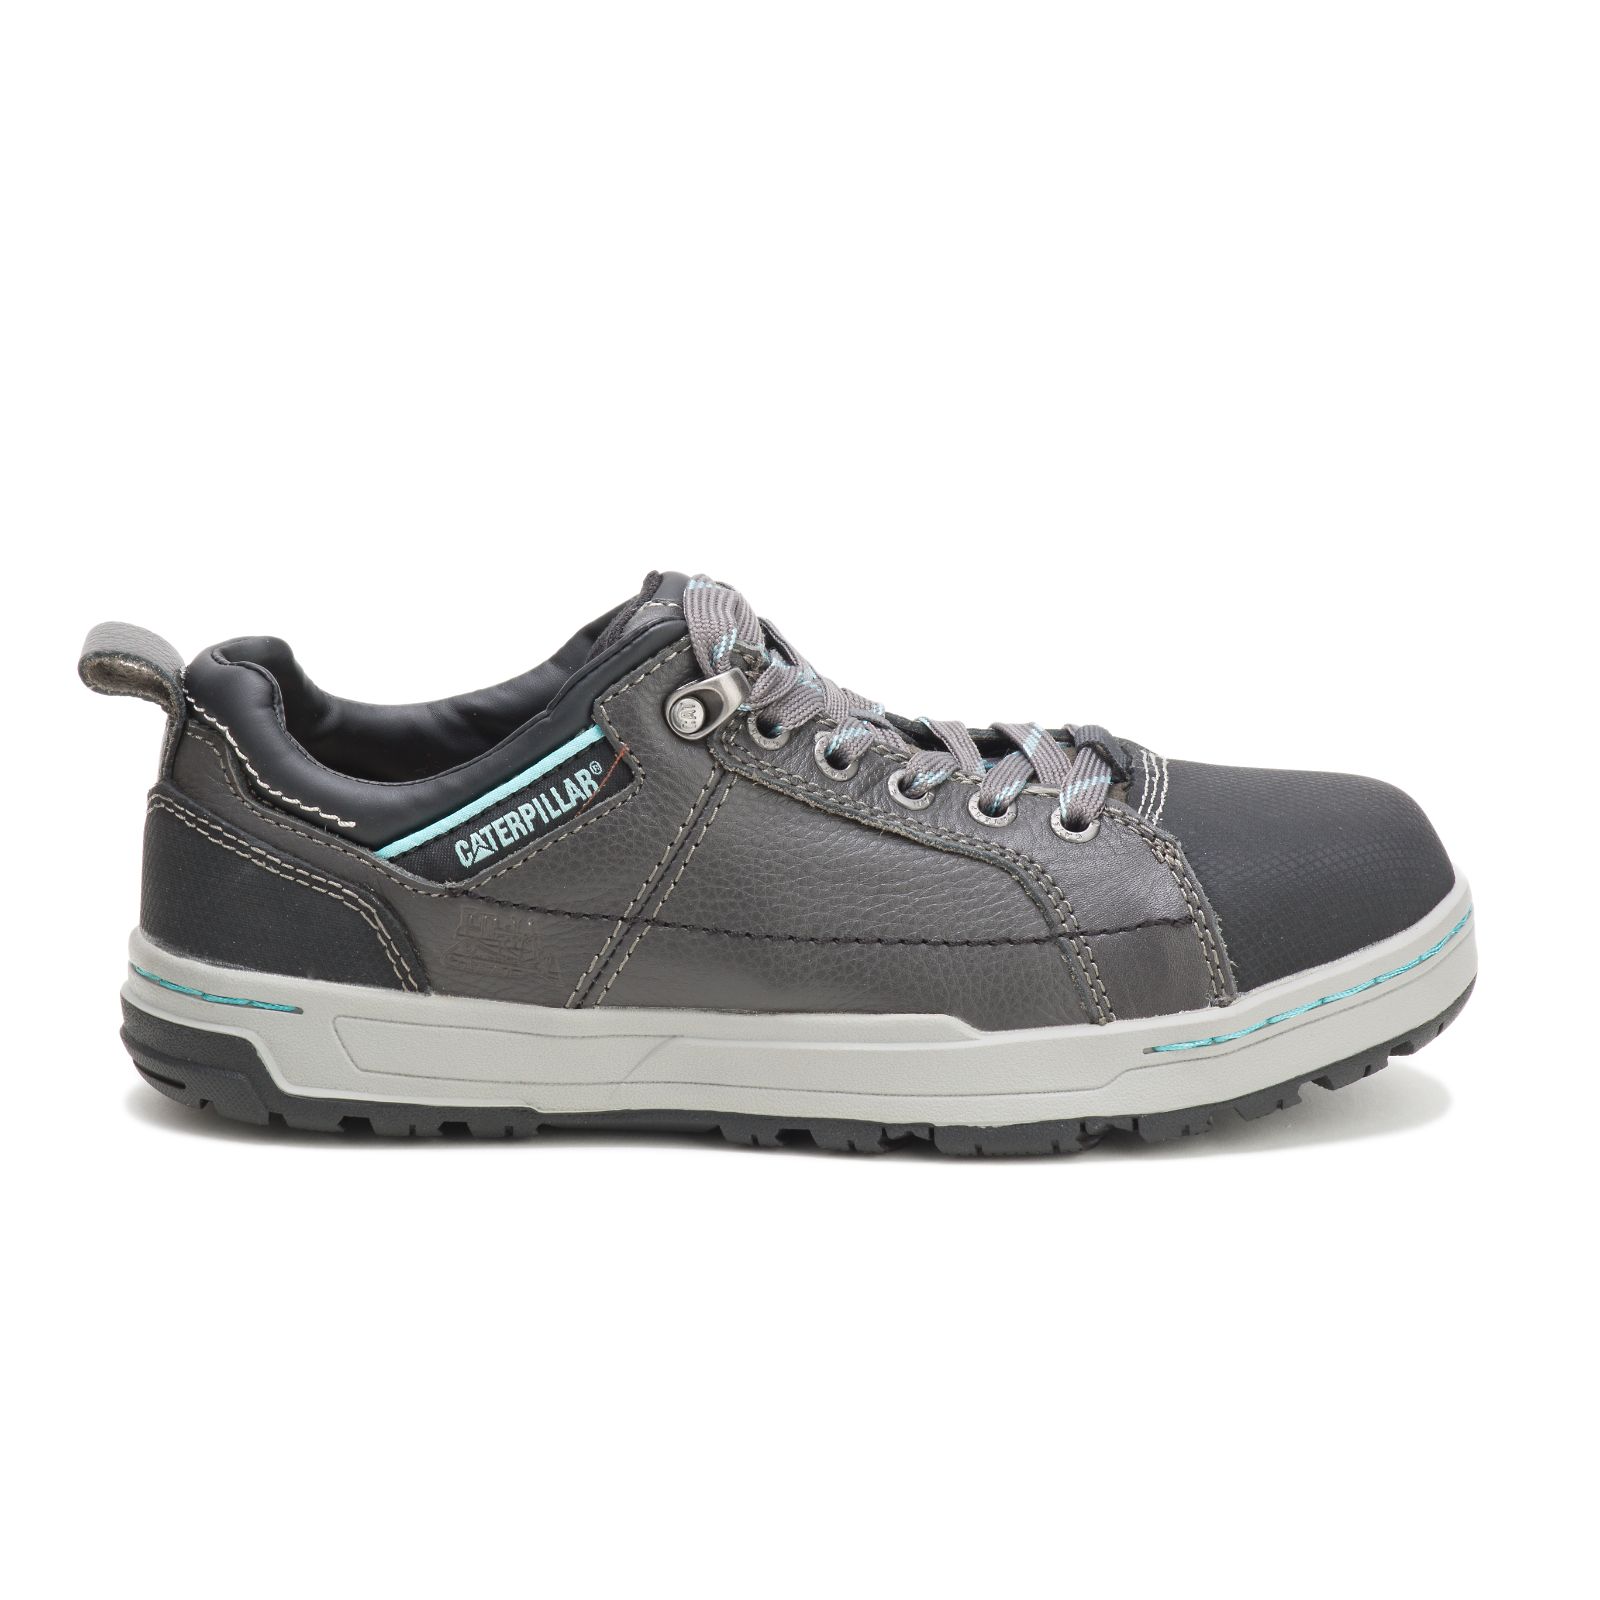 Caterpillar Brode Steel Toe - Womens Steel Toe Boots - Dark Grey/Mint - NZ (451HQTDFJ)